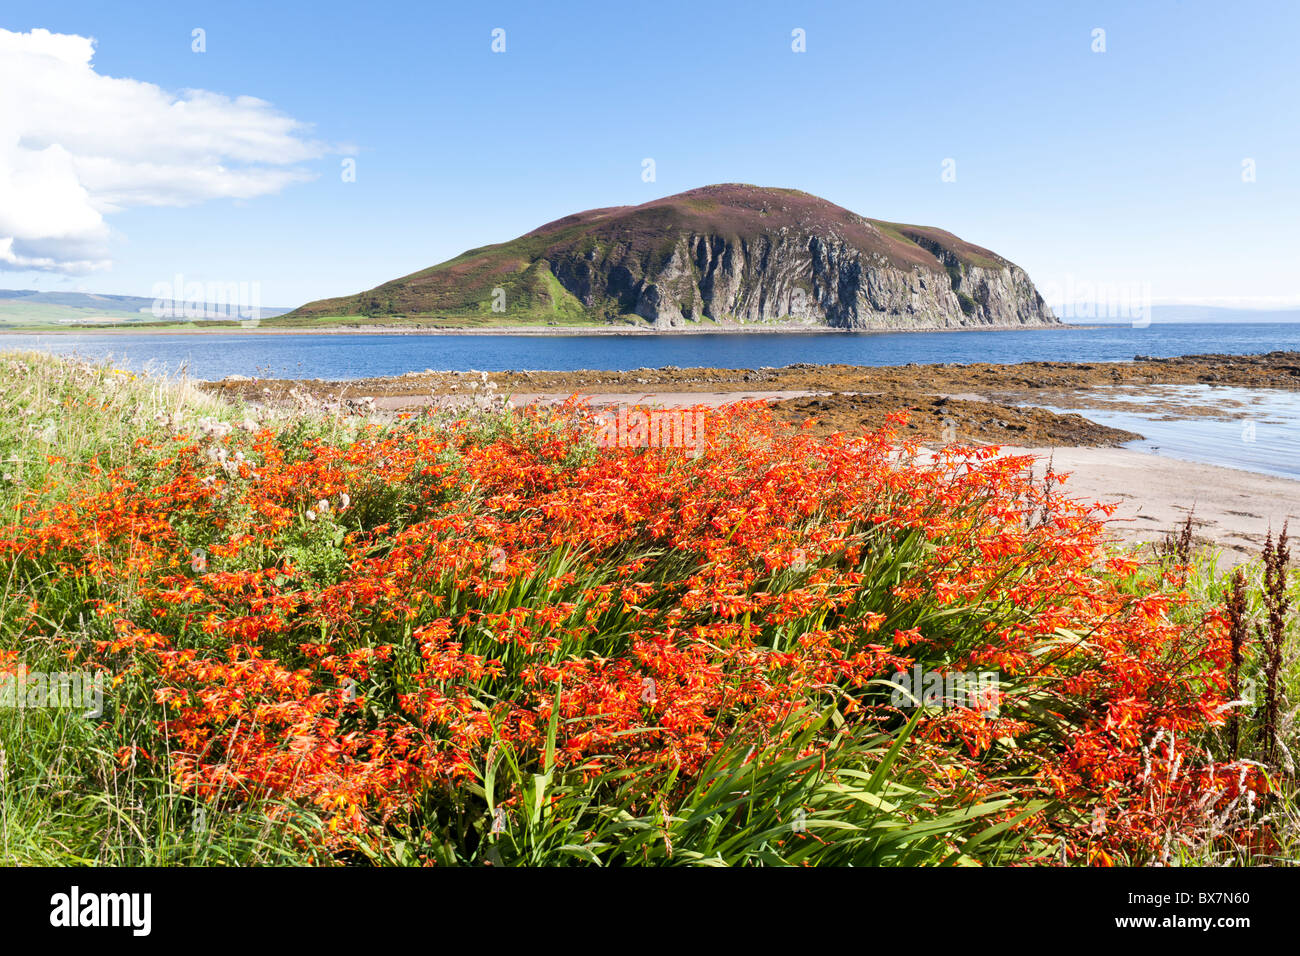 Davaar Island an der Einmündung des Campbeltown Loch, der über die Kildalloig Bay, auf der Halbinsel Kintyre, Argyll & Bute, Schottland, Großbritannien, liegt Stockfoto